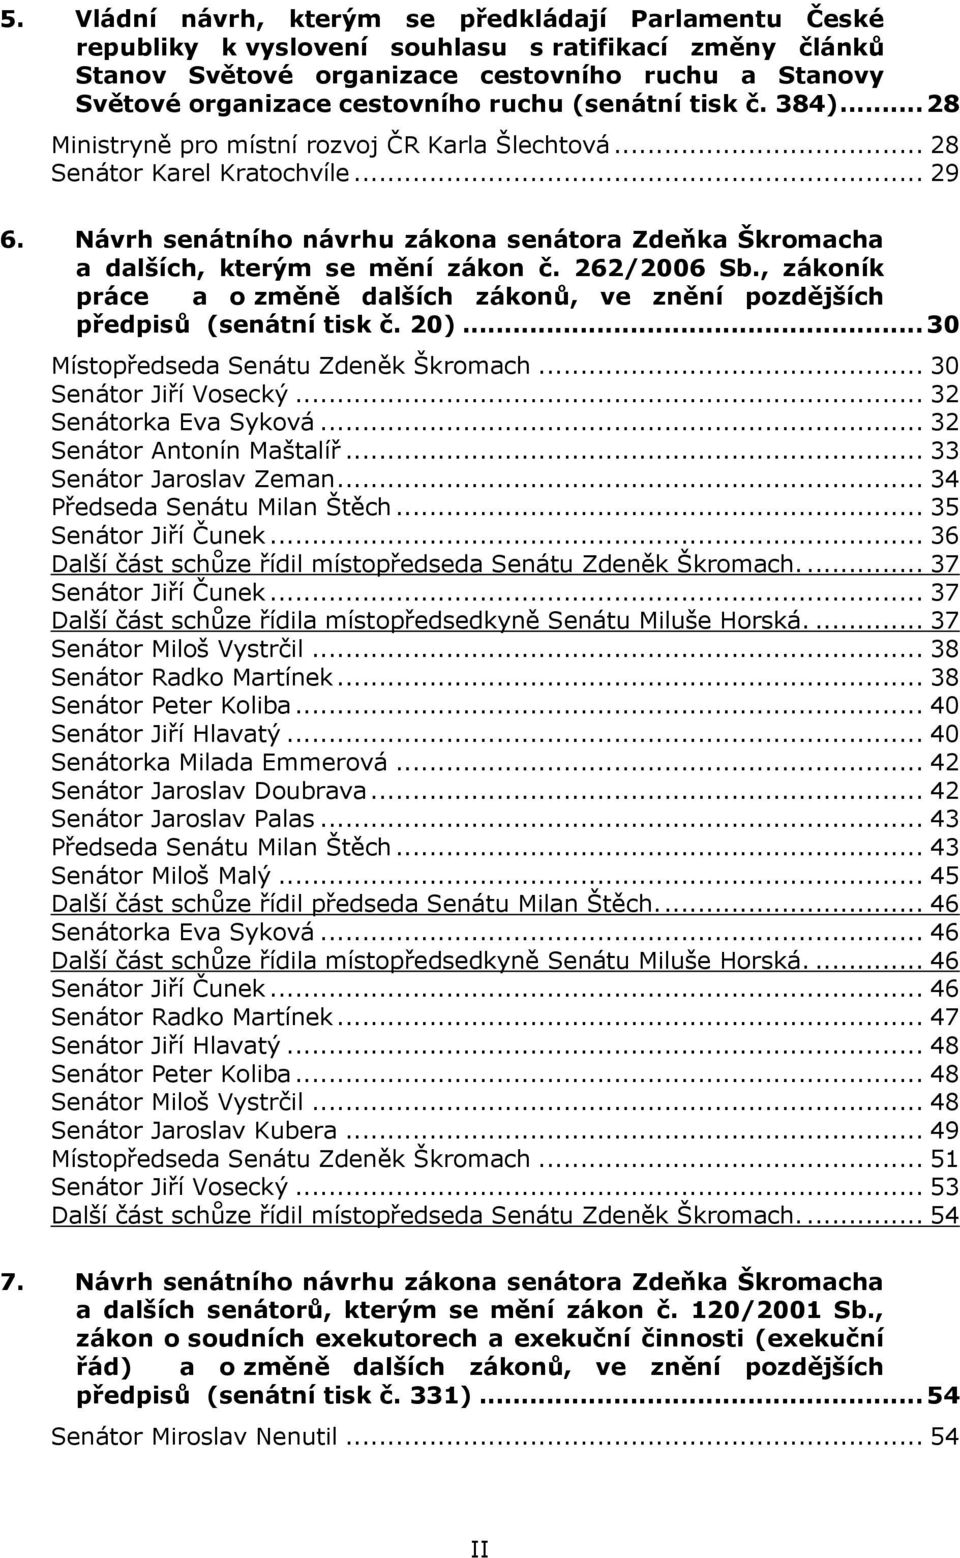 Návrh senátního návrhu zákona senátora Zdeňka Škromacha a dalších, kterým se mění zákon č. 262/2006 Sb., zákoník práce a o změně dalších zákonů, ve znění pozdějších předpisů (senátní tisk č. 20).